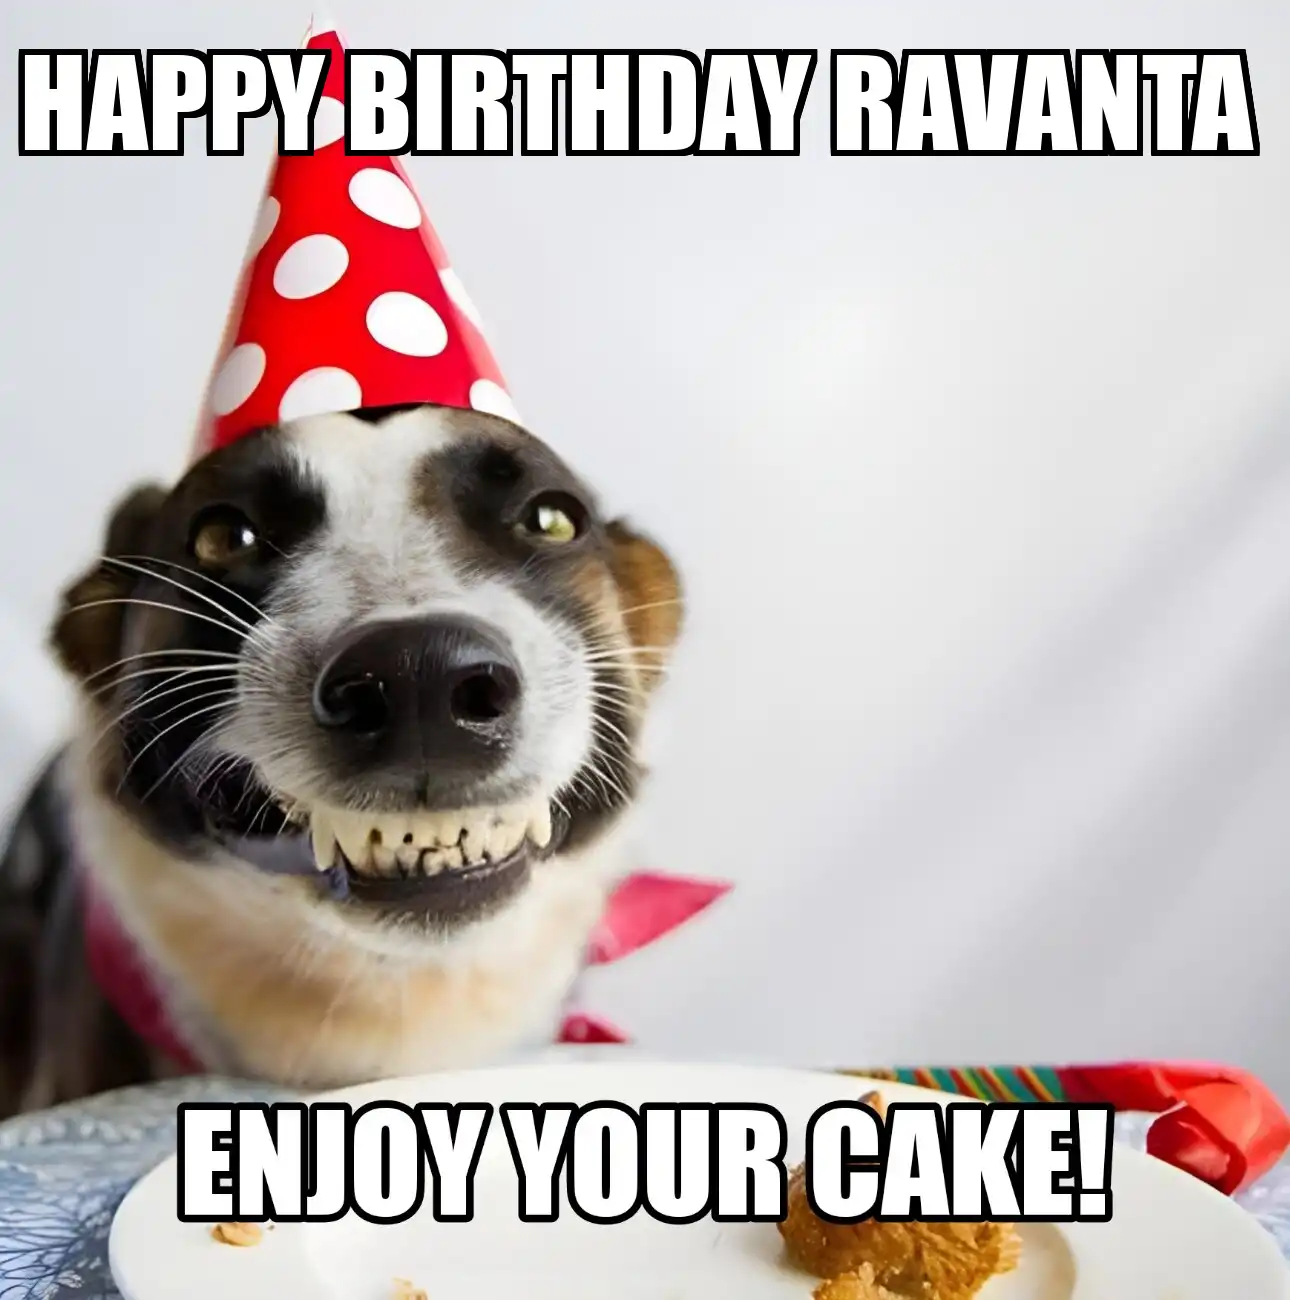 Happy Birthday Ravanta Enjoy Your Cake Dog Meme